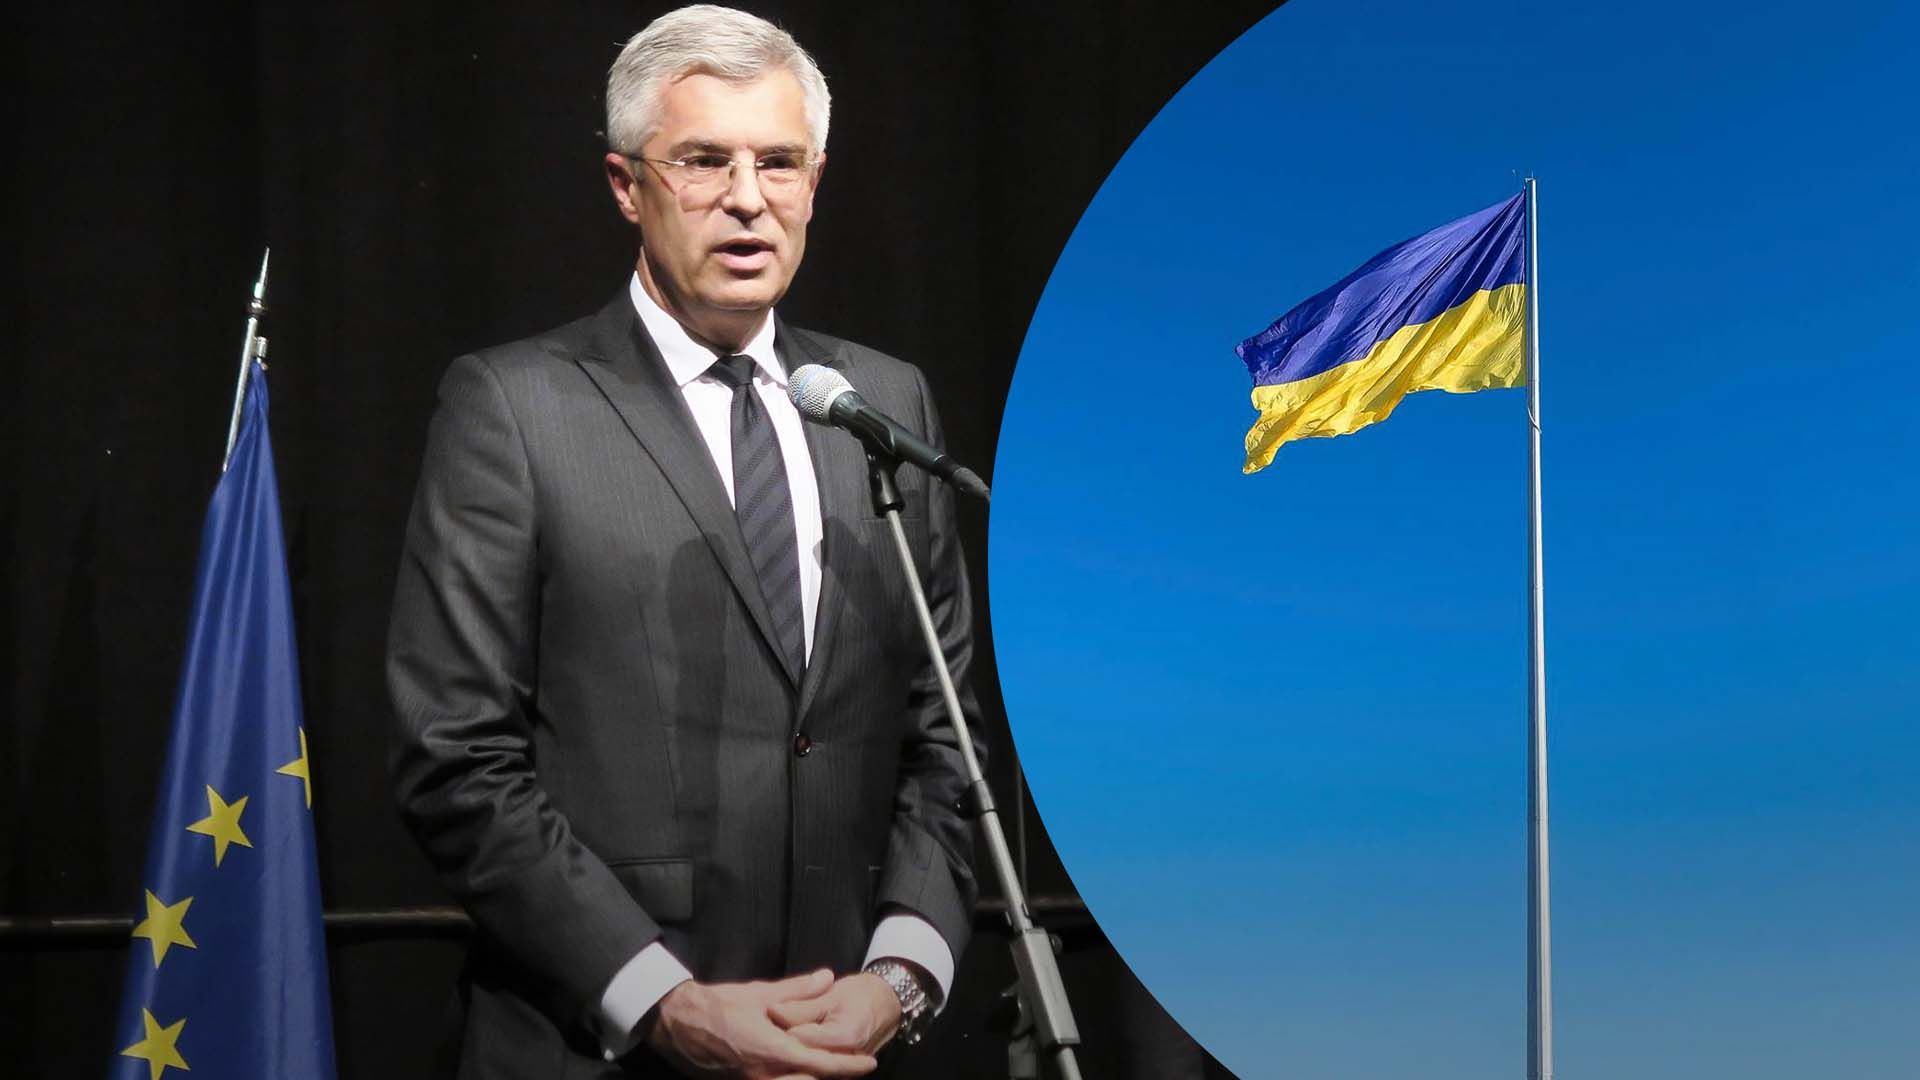 Какова позиция кандидата в президенты Словакии относительно Украины